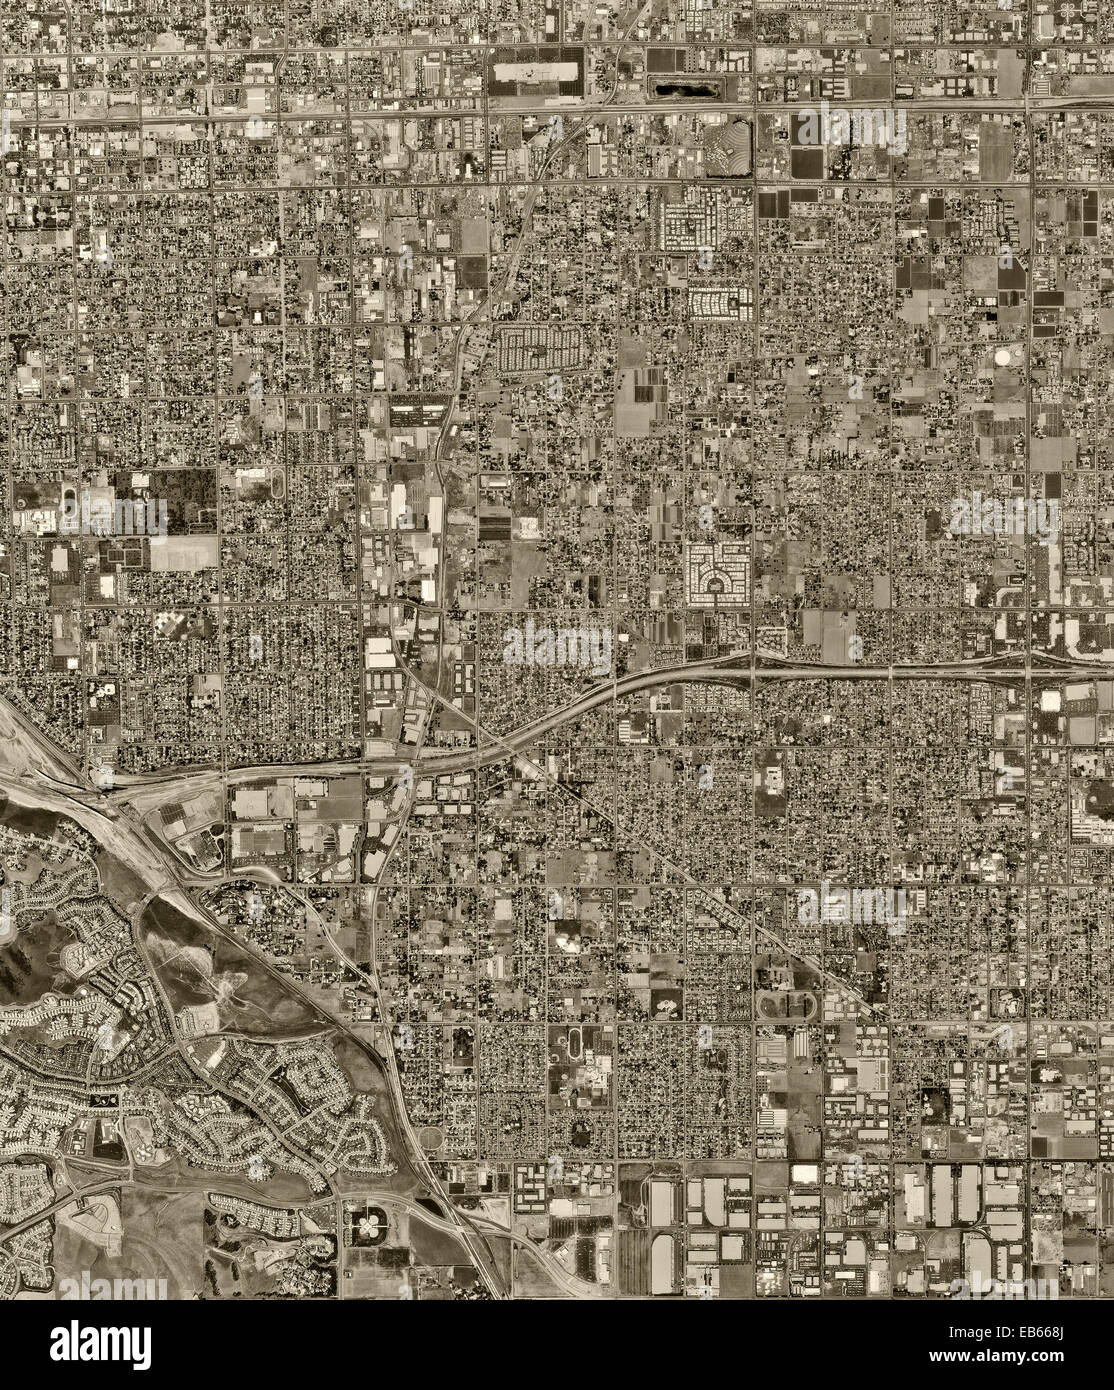 Fotografía aérea histórica, el chino, el condado de Los Ángeles, California, 1972 Foto de stock